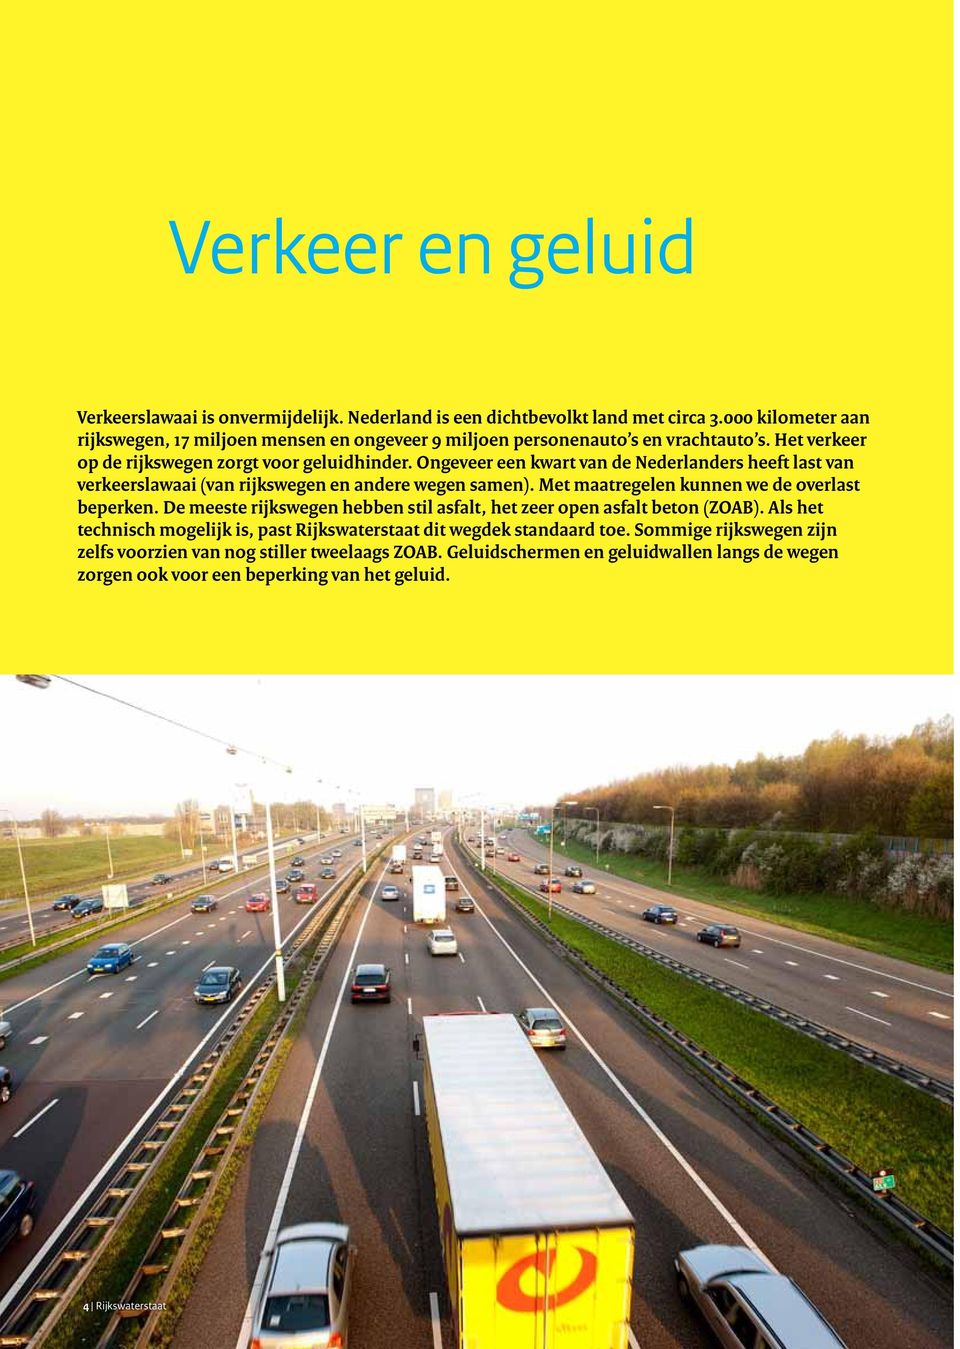 Ongeveer een kwart van de Nederlanders heeft last van verkeerslawaai (van rijkswegen en andere wegen samen). Met maatregelen kunnen we de overlast beperken.